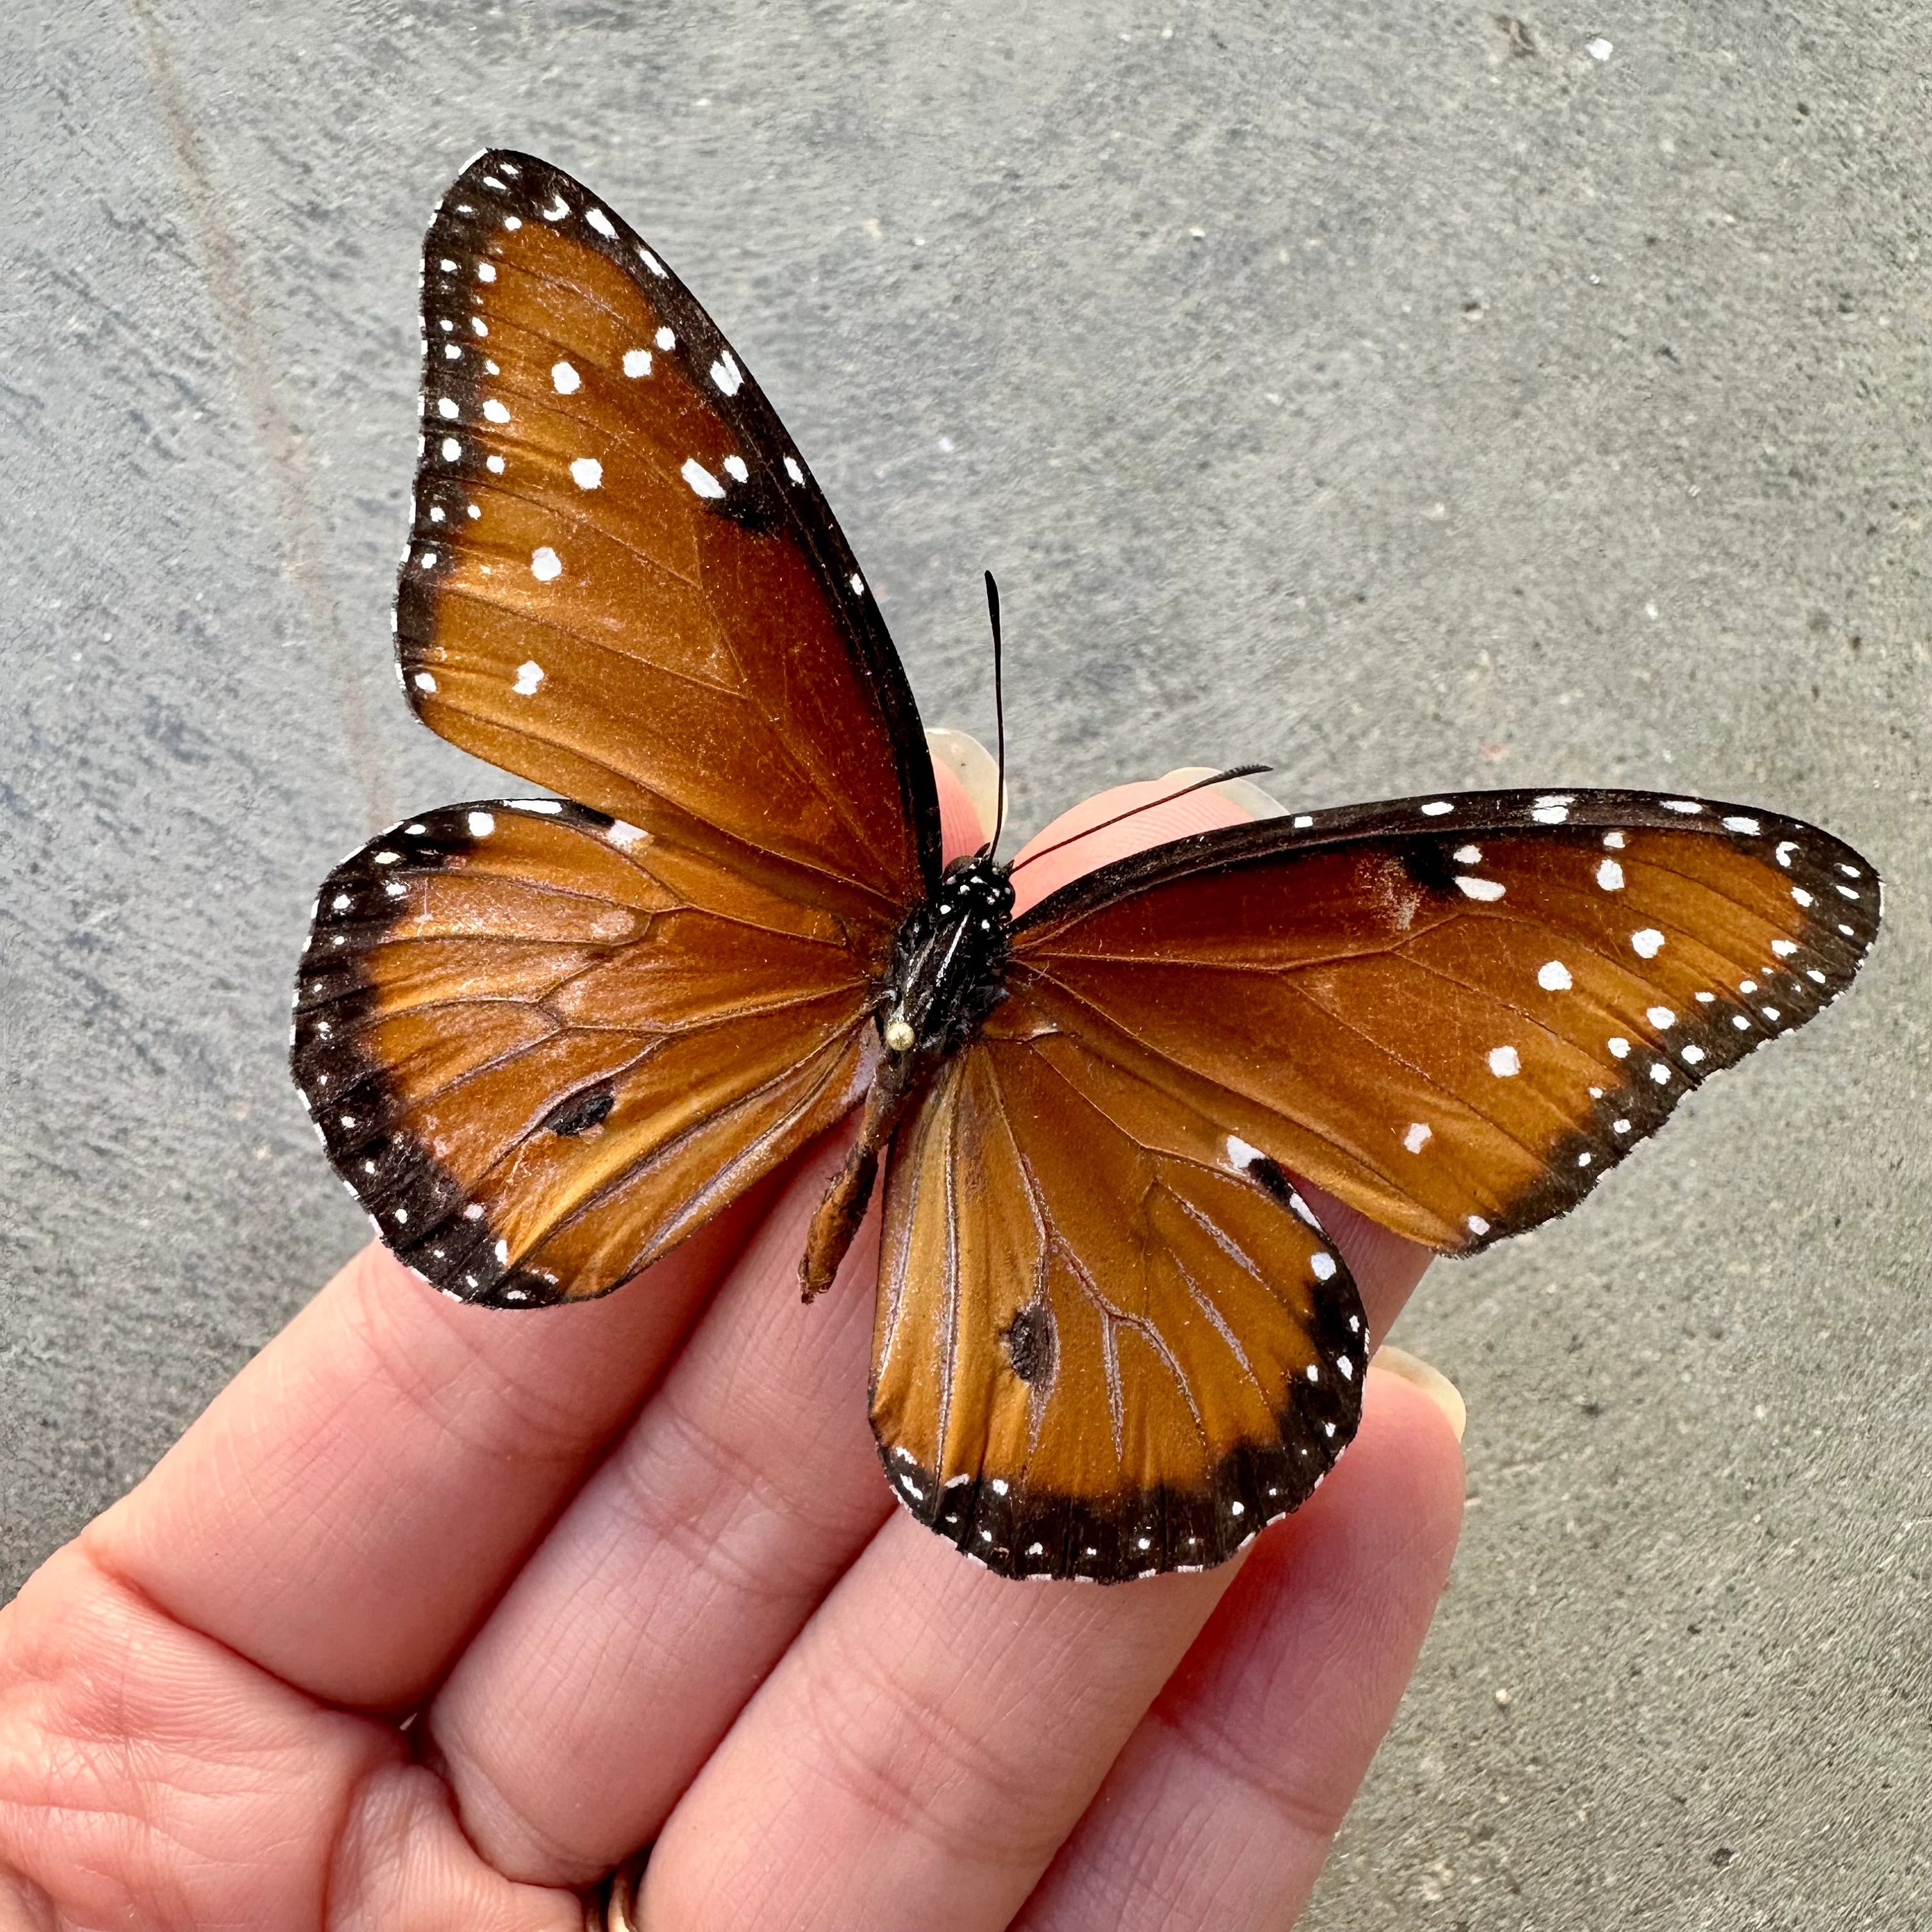 Queen Butterfly 'Danaus gilippus'